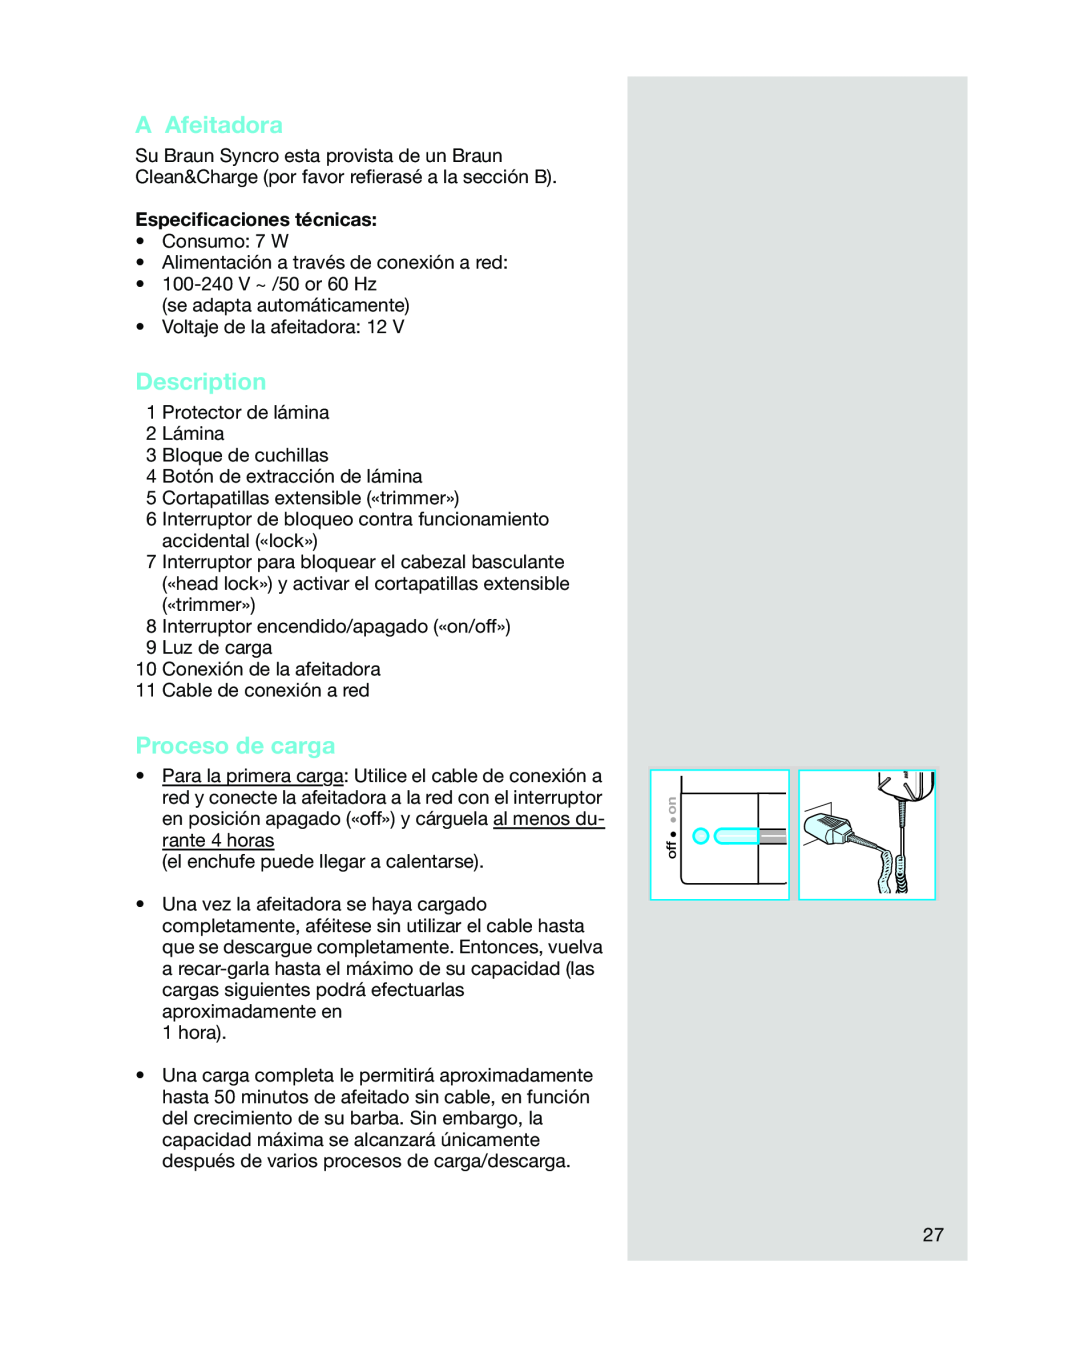 Braun 5441 manual A Afeitadora, Proceso de carga, Description, Especiﬁcaciones técnicas 